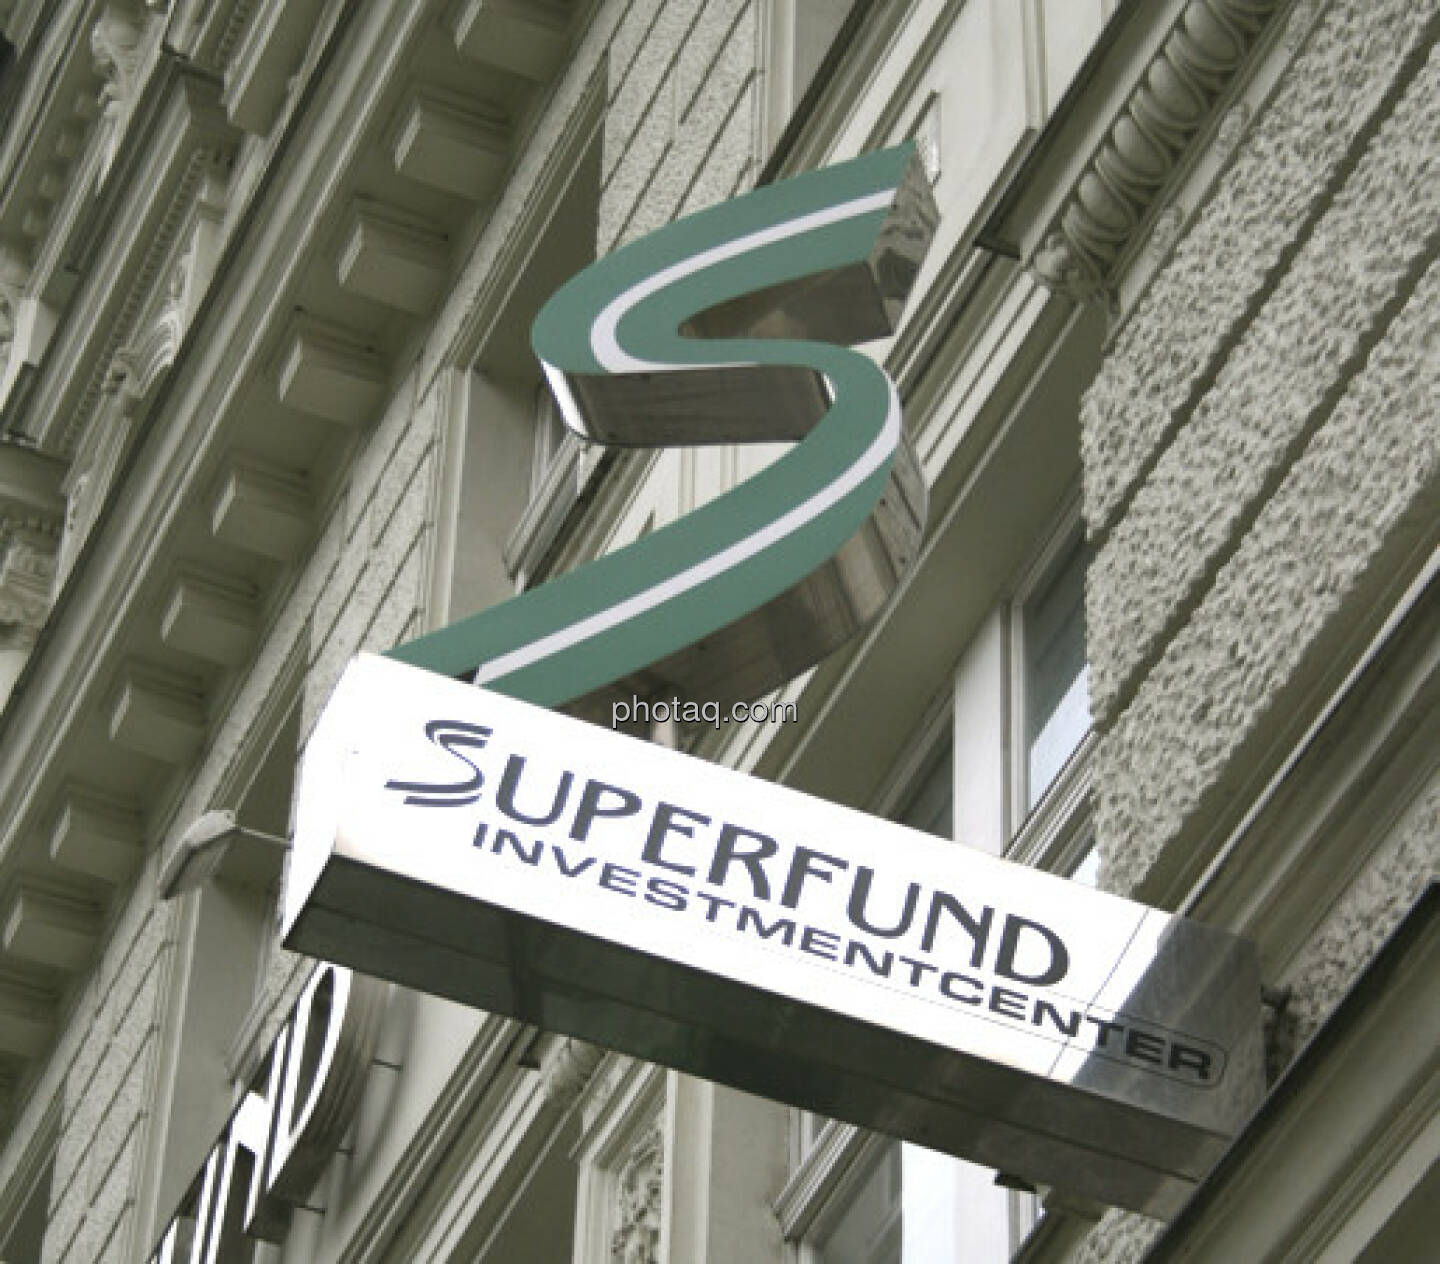 Superfund Investmentcenter